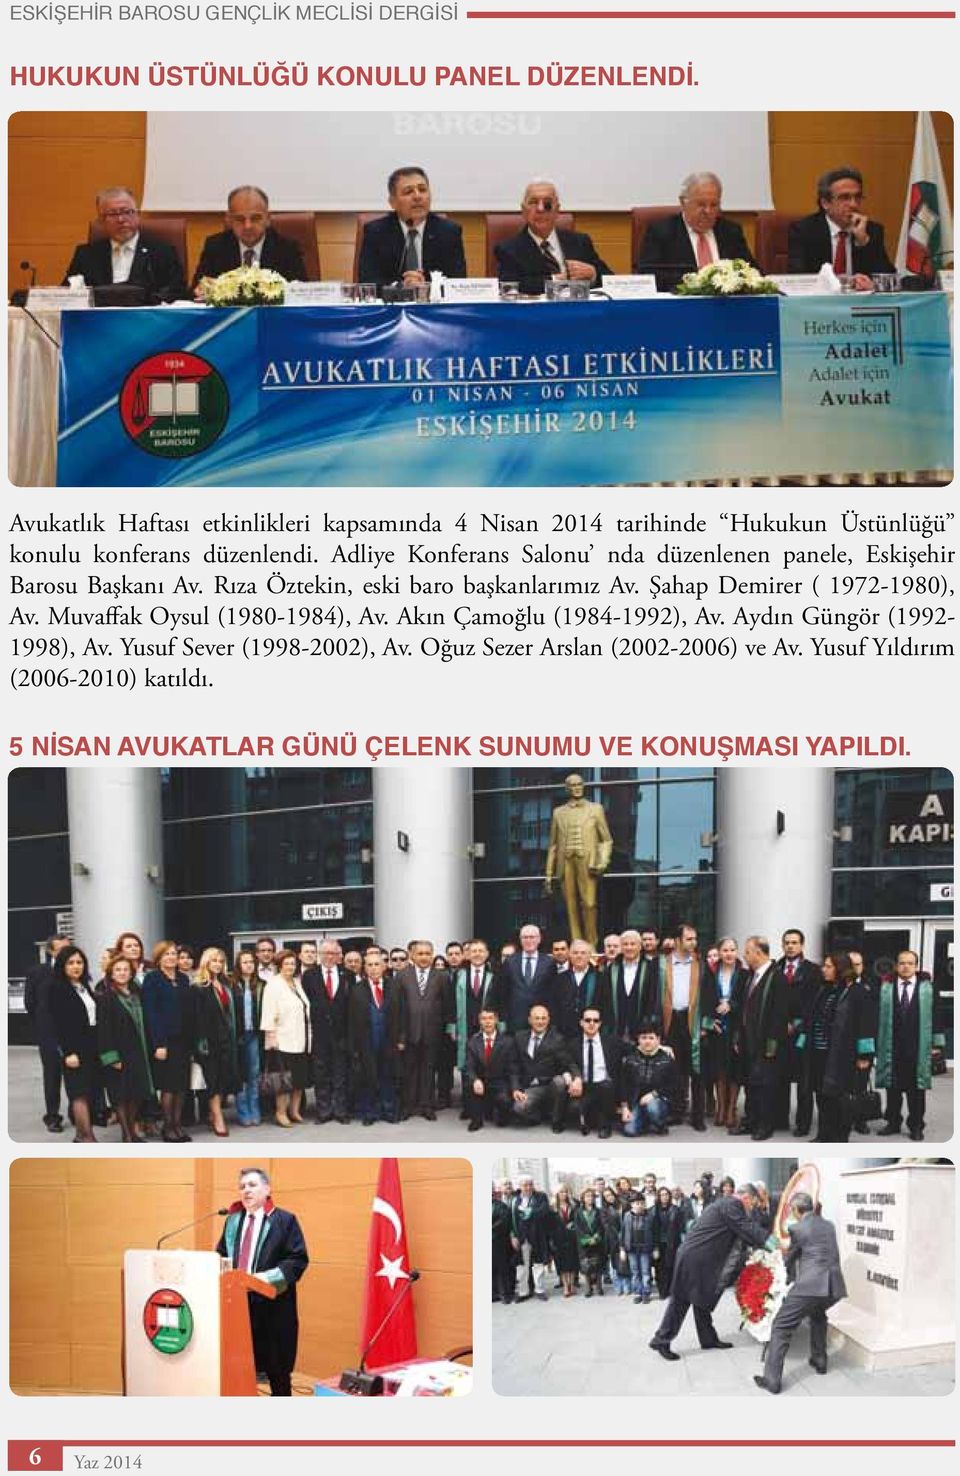 Adliye Konferans Salonu nda düzenlenen panele, Eskişehir Barosu Başkanı Av. Rıza Öztekin, eski baro başkanlarımız Av. Şahap Demirer ( 1972-1980), Av.